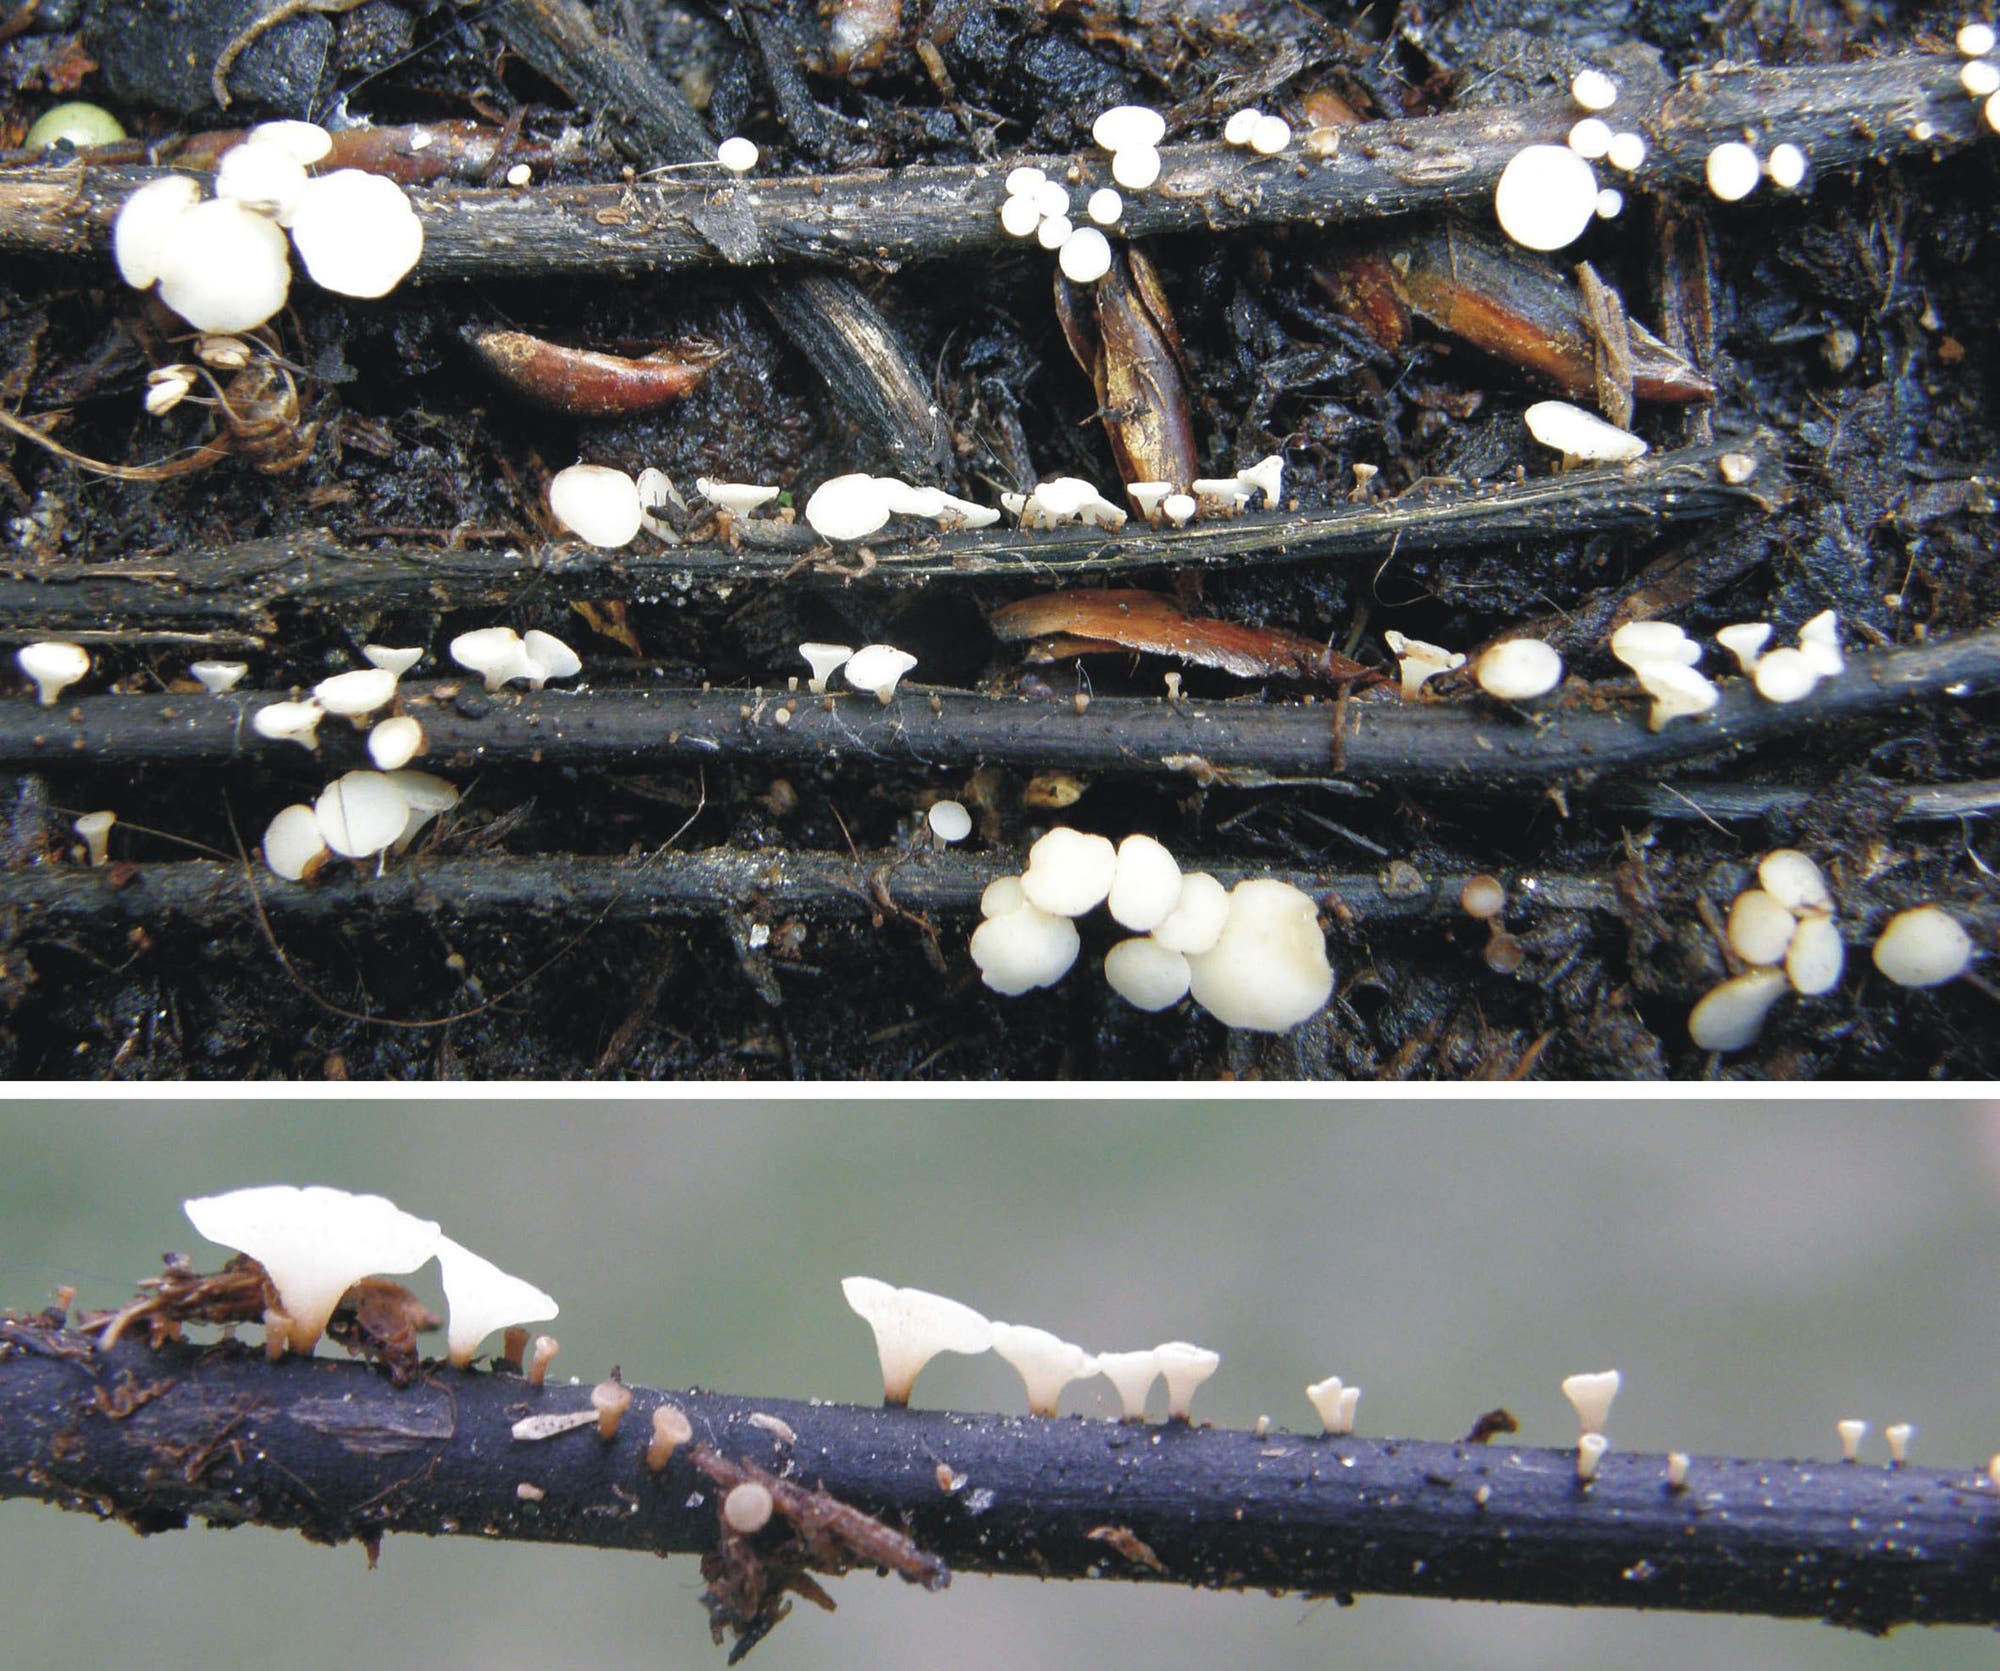 Ausgelöst wird das Eschensterben durch einen Befall mit dem Falschen Weißen Stängelbecherchen – ein aggressiver Schlauchpilz, der vor 20 Jahren wohl aus Asien eingeschleppt wurde. Zu sehen sind die weißen Fruchtkörper des Pilzes.